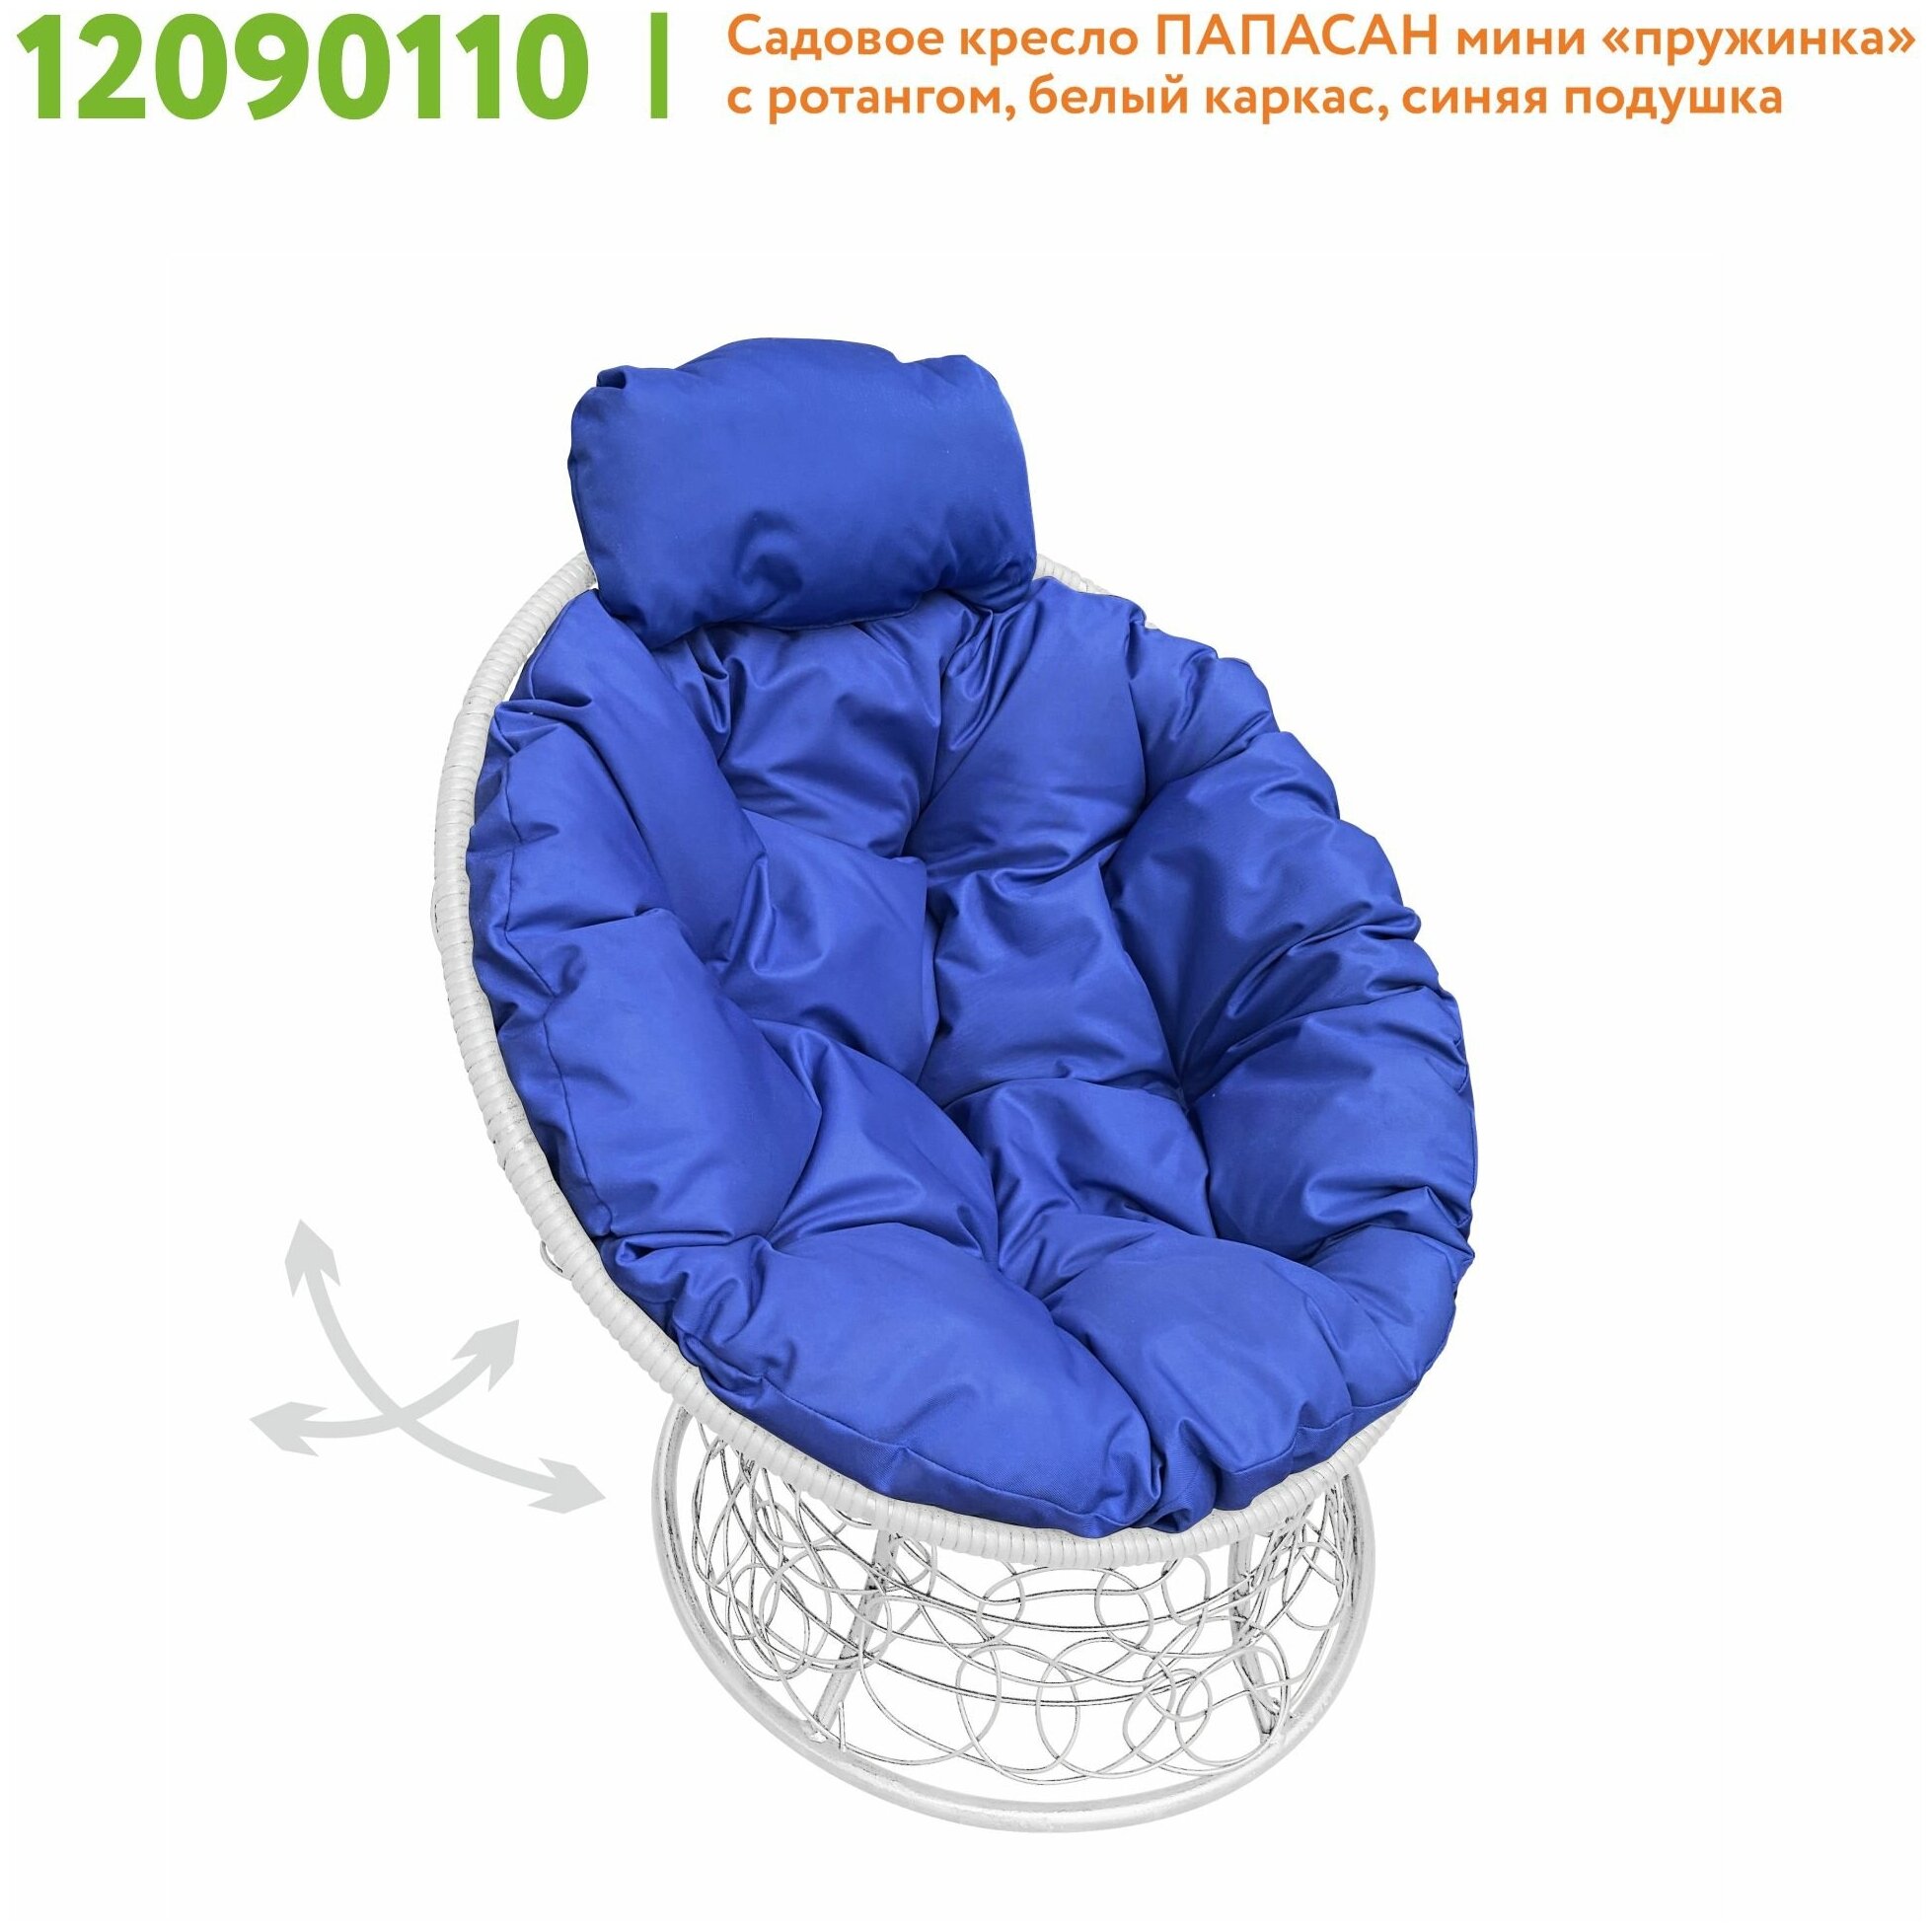 Кресло m-group папасан пружинка мини ротанг белое, синяя подушка - фотография № 3